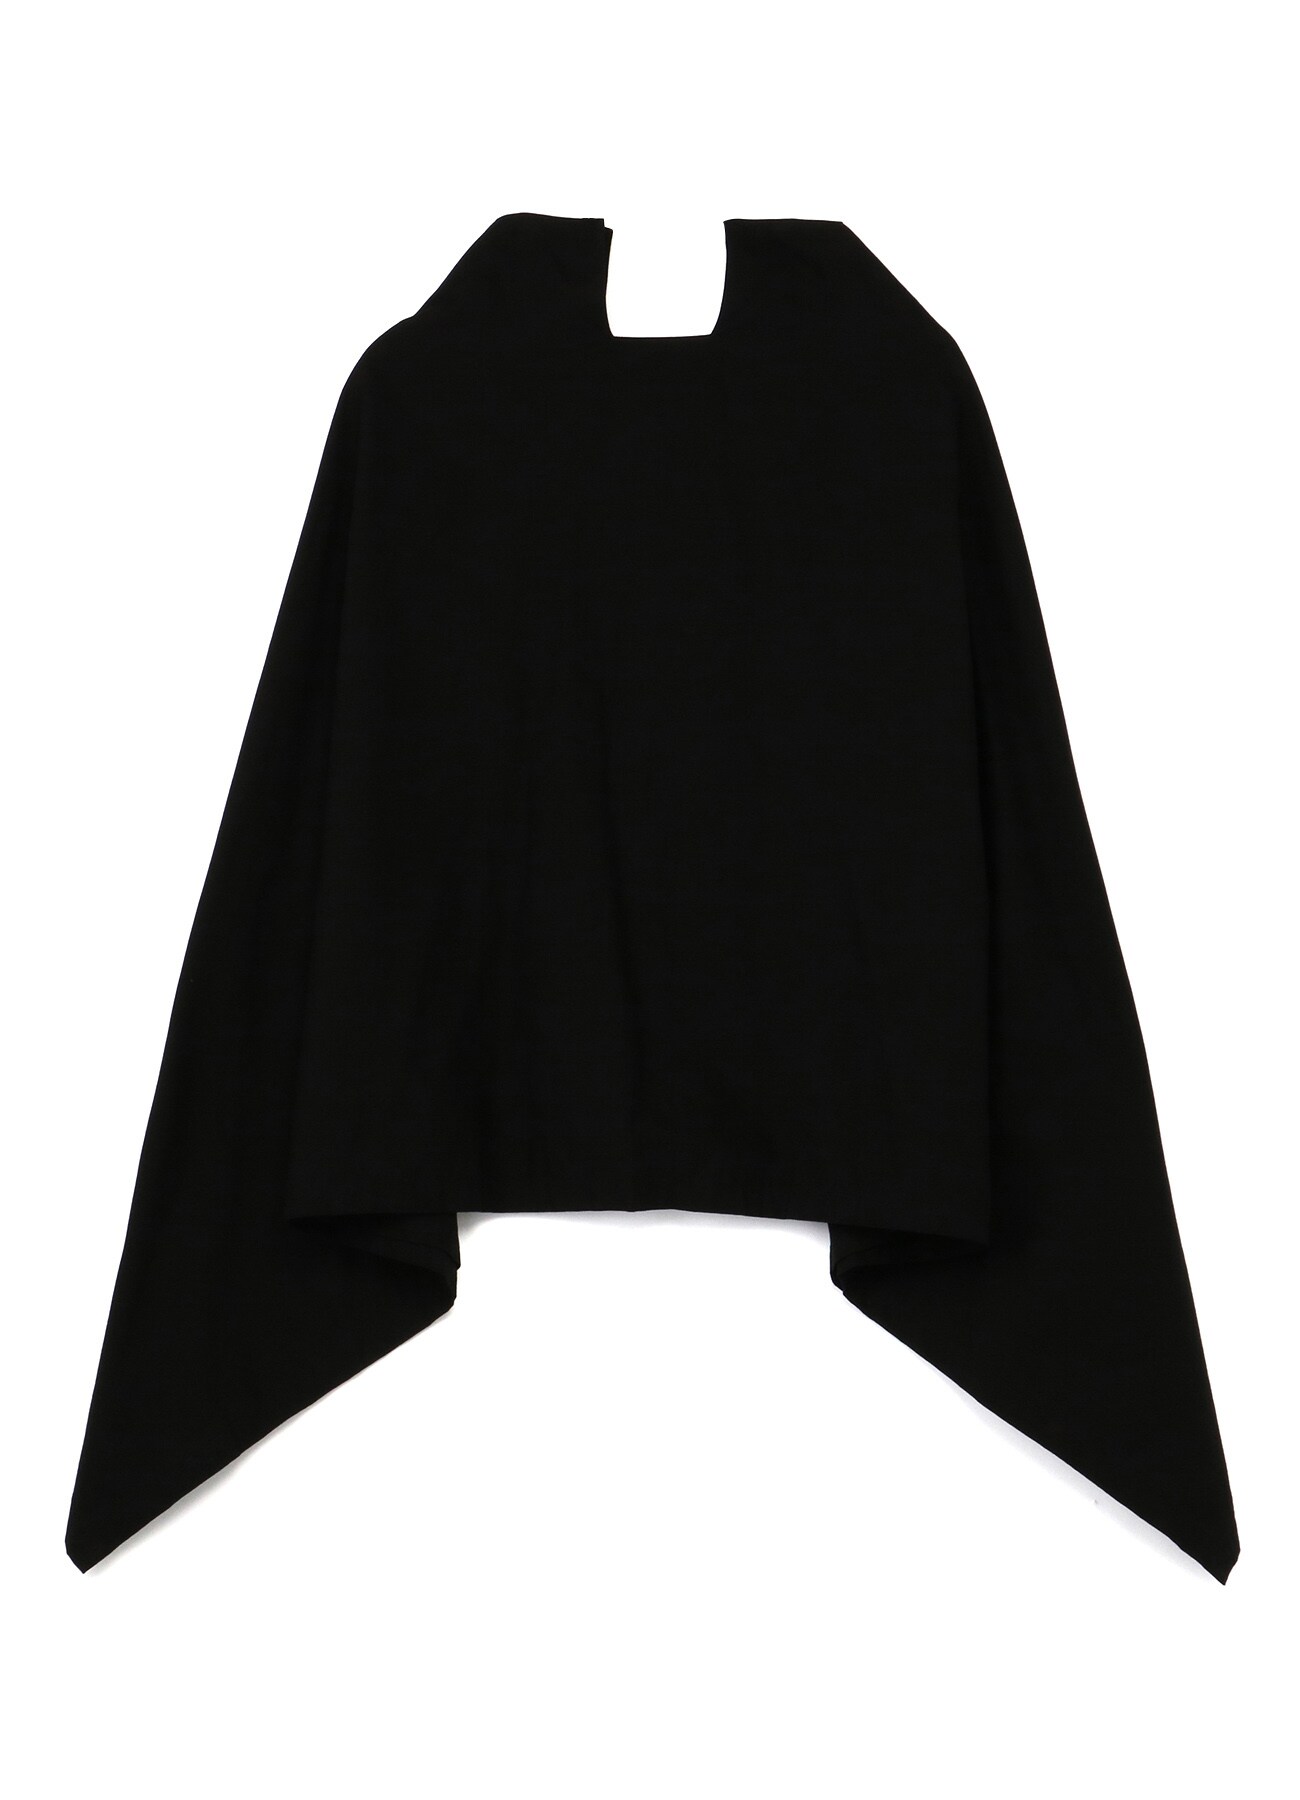 Cotton Cloth Sqaure Skirt A